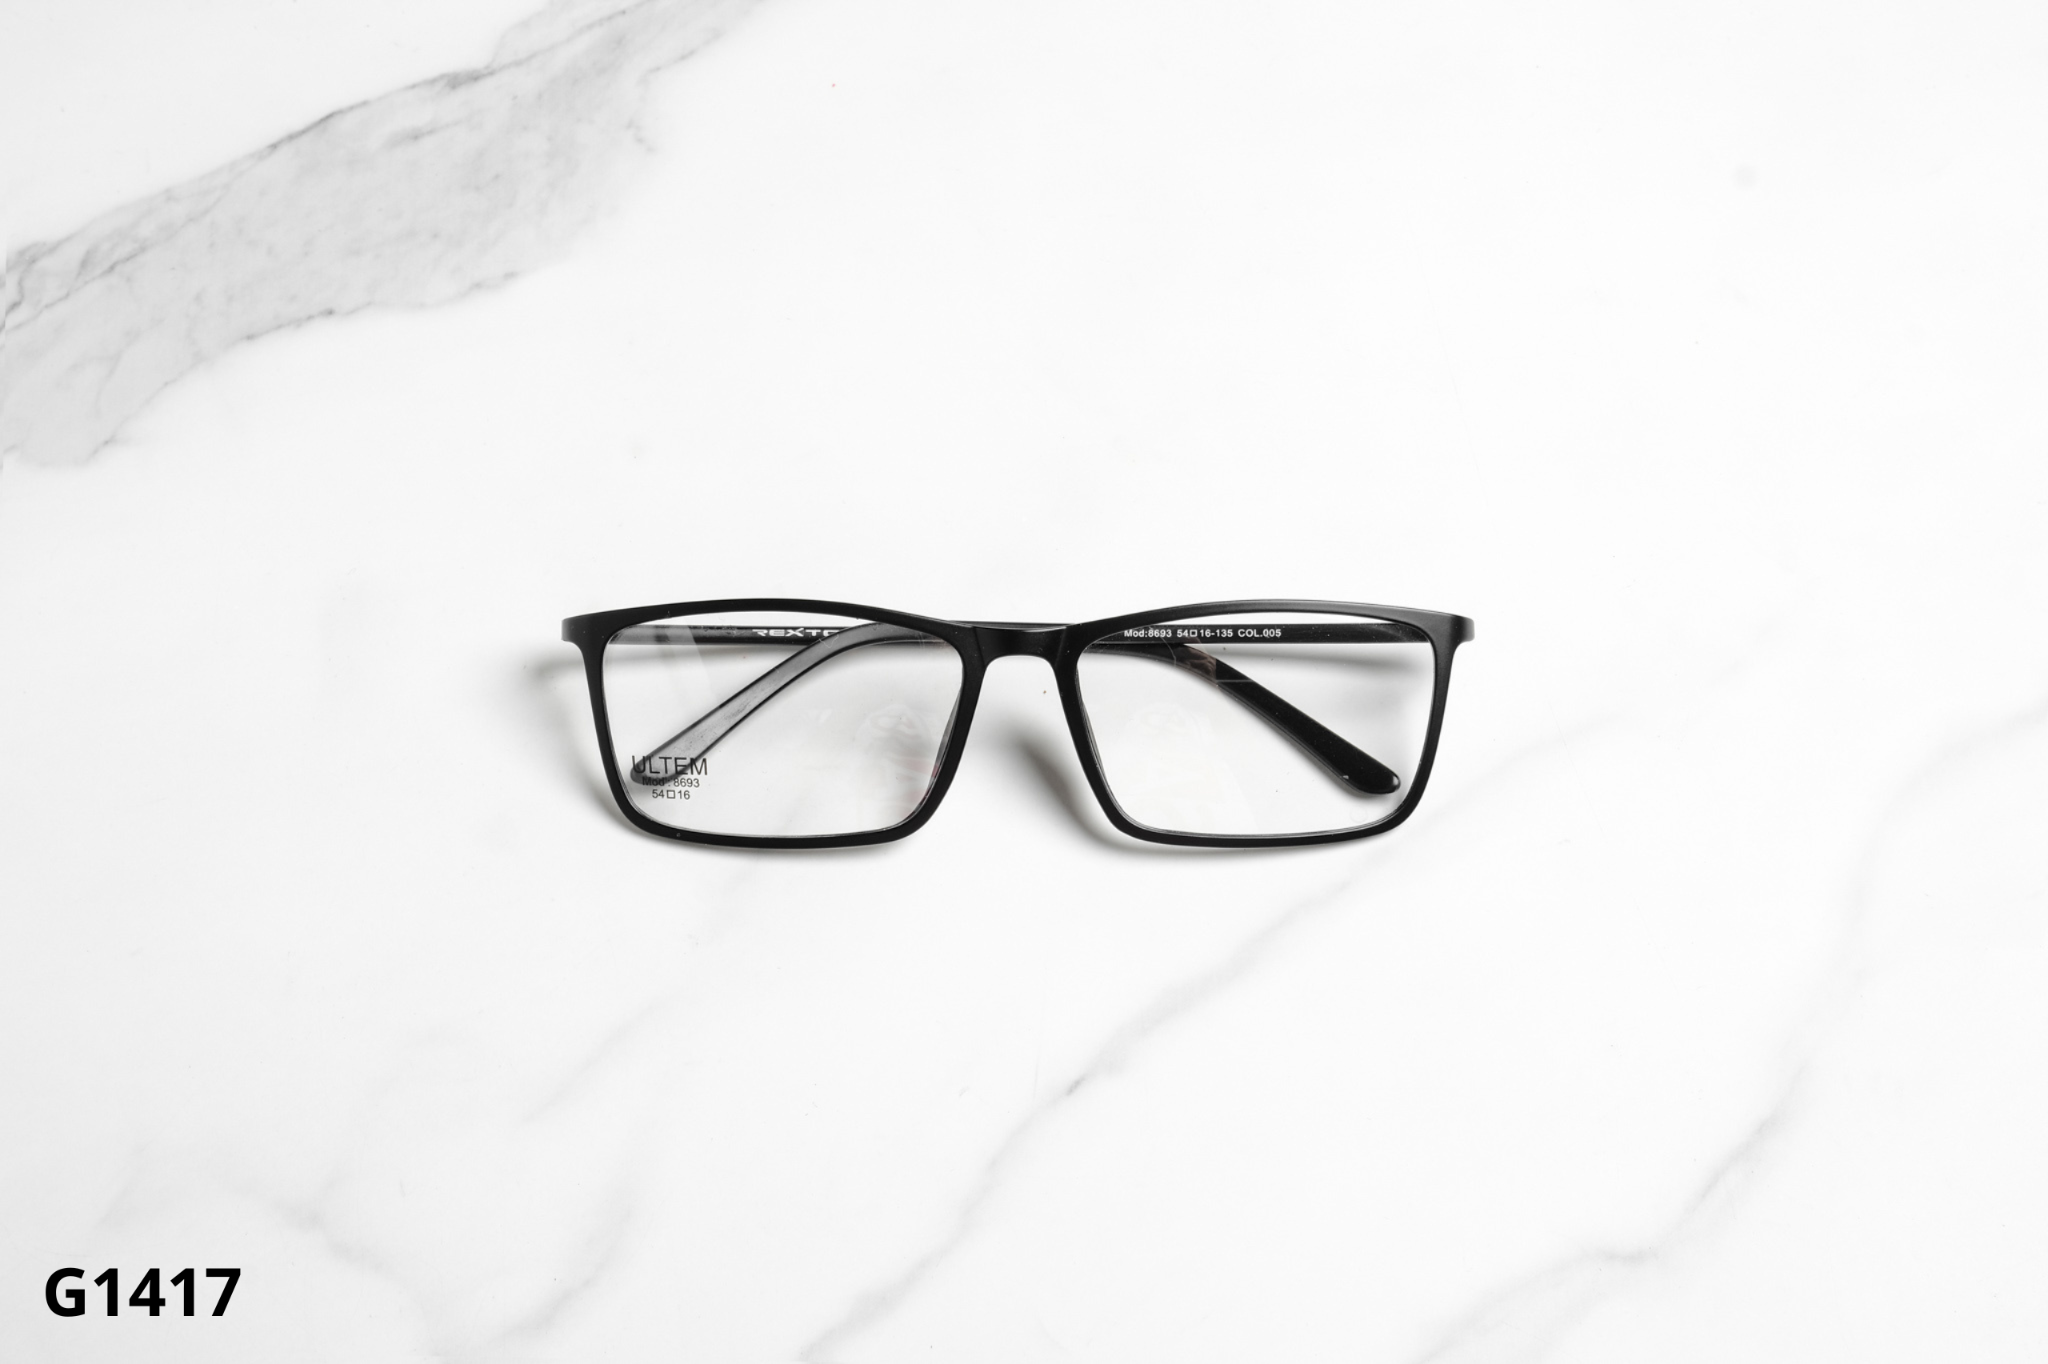  Rex-ton Eyewear - Glasses - G1417 